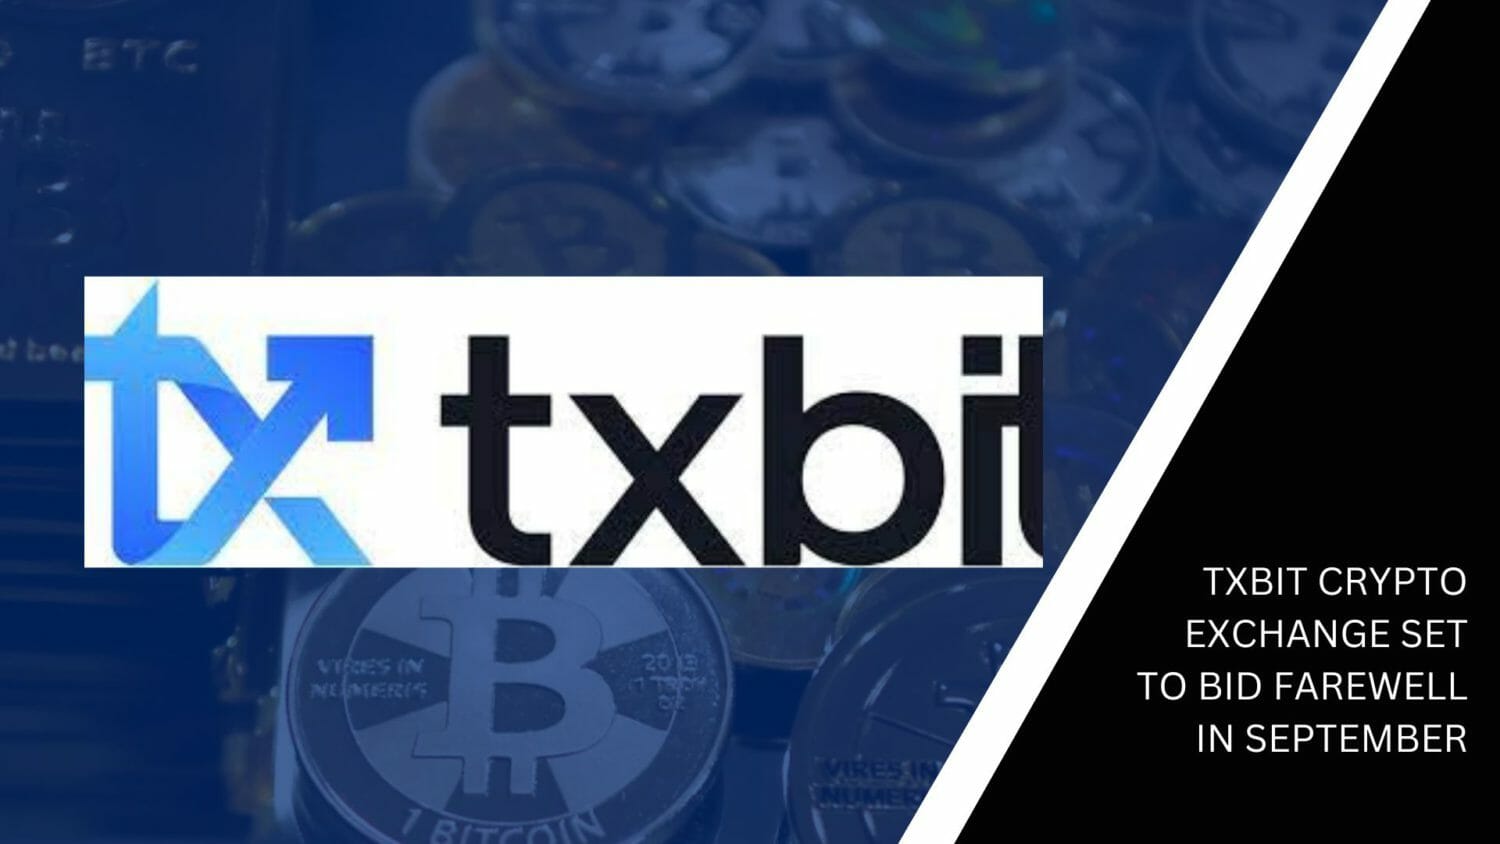 Txbit Crypto Exchange Set To Bid Farewell In September